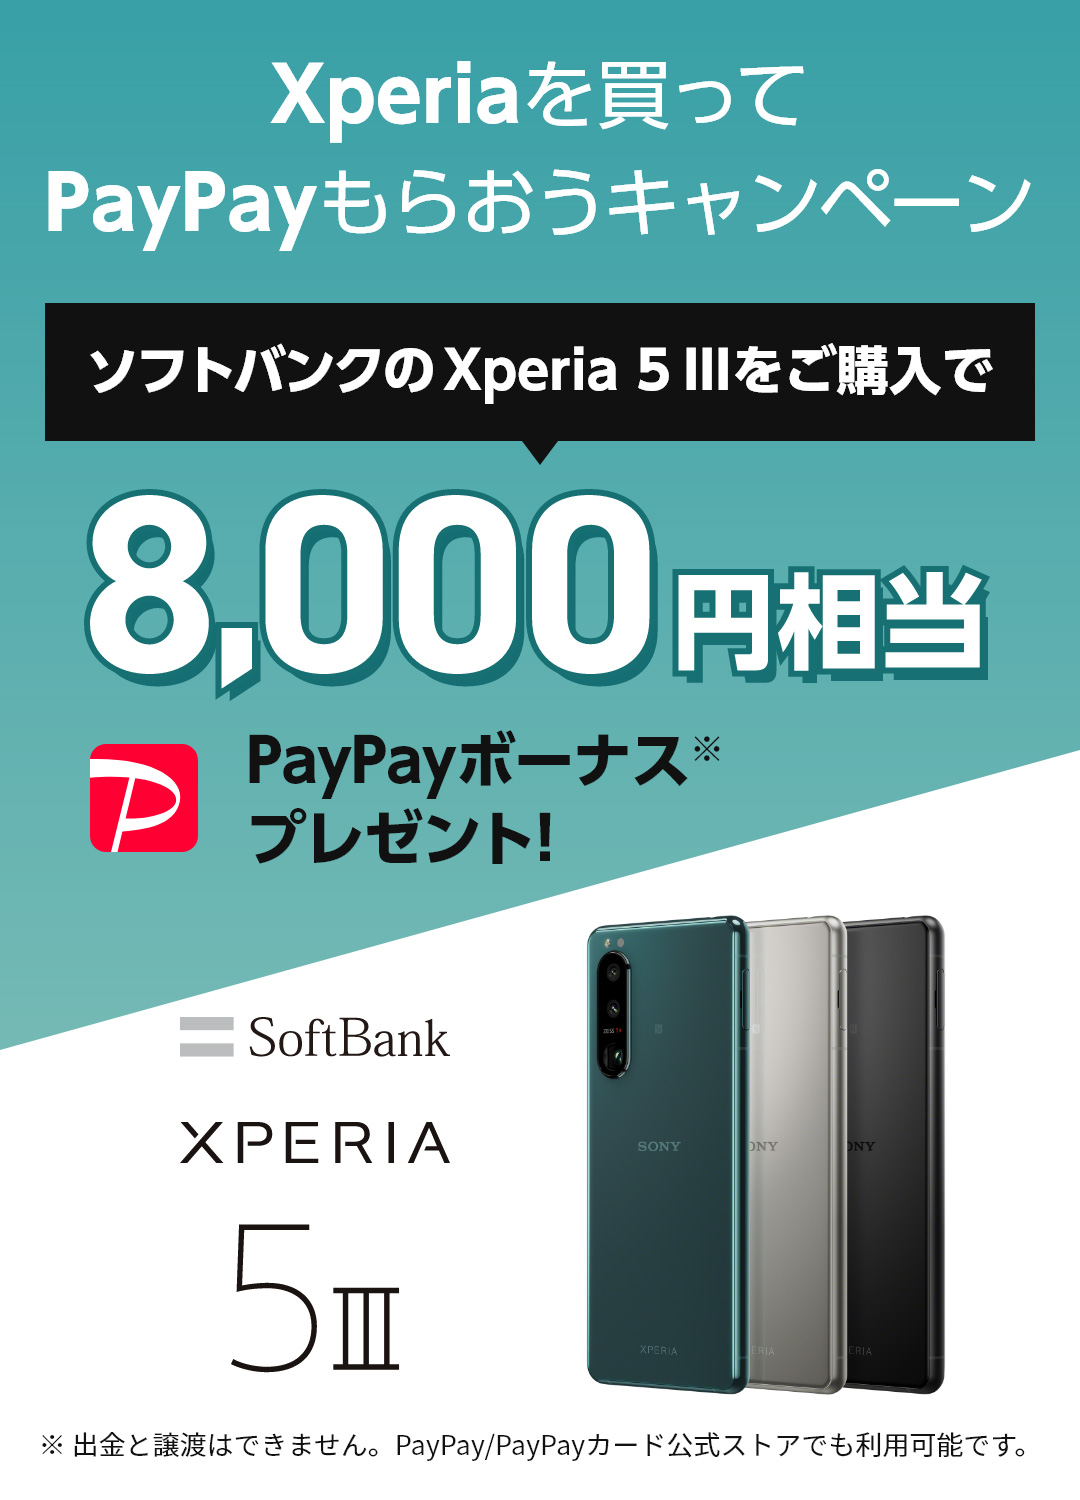 Xperiaを買ってPayPayもらおうキャンペーン ソフトバンクのXperia 5 IIIをご購入で8,000円相当PayPayボーナス※プレゼント！※出金と譲渡はできません。PayPay/PayPayカード公式ストアでも利用可能です。